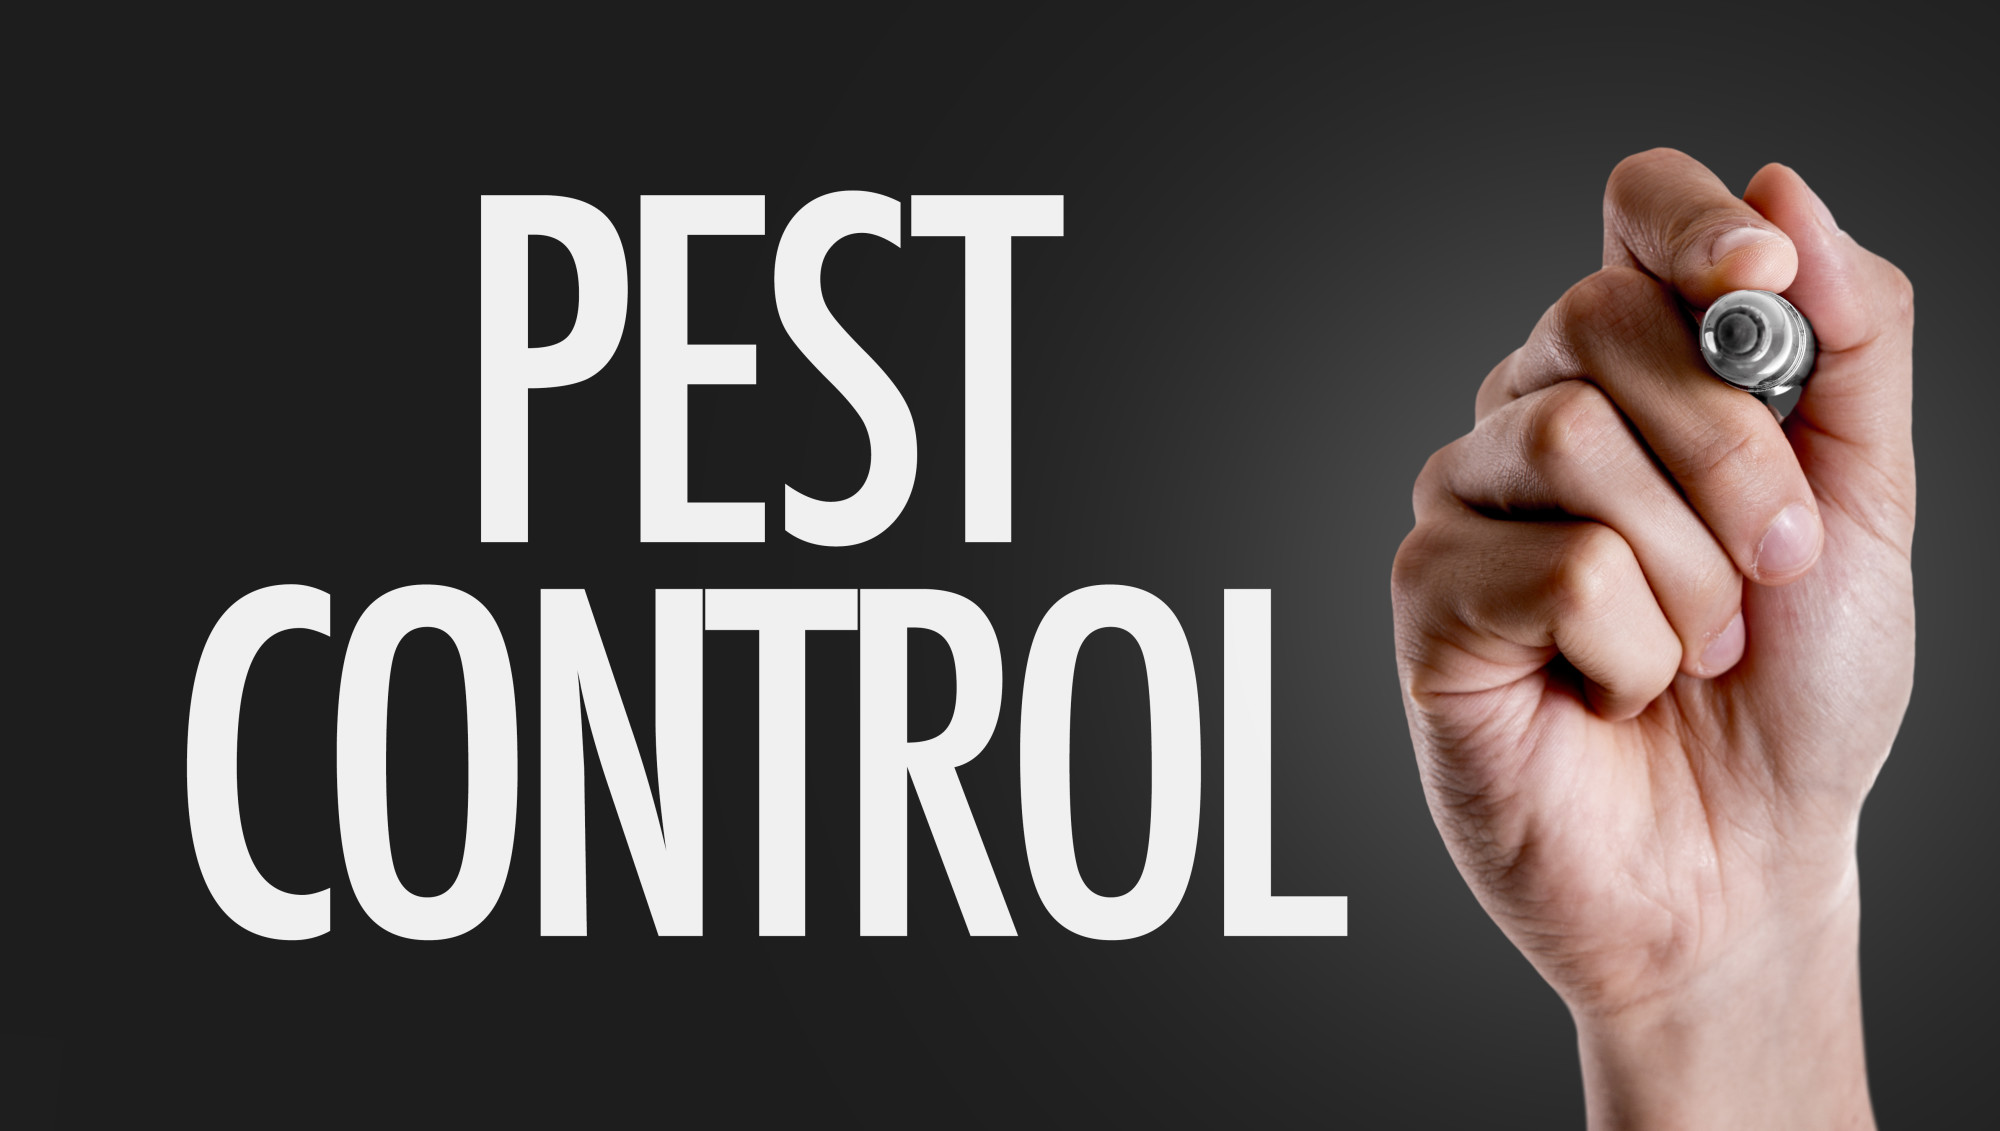 pest control in Columbia SC